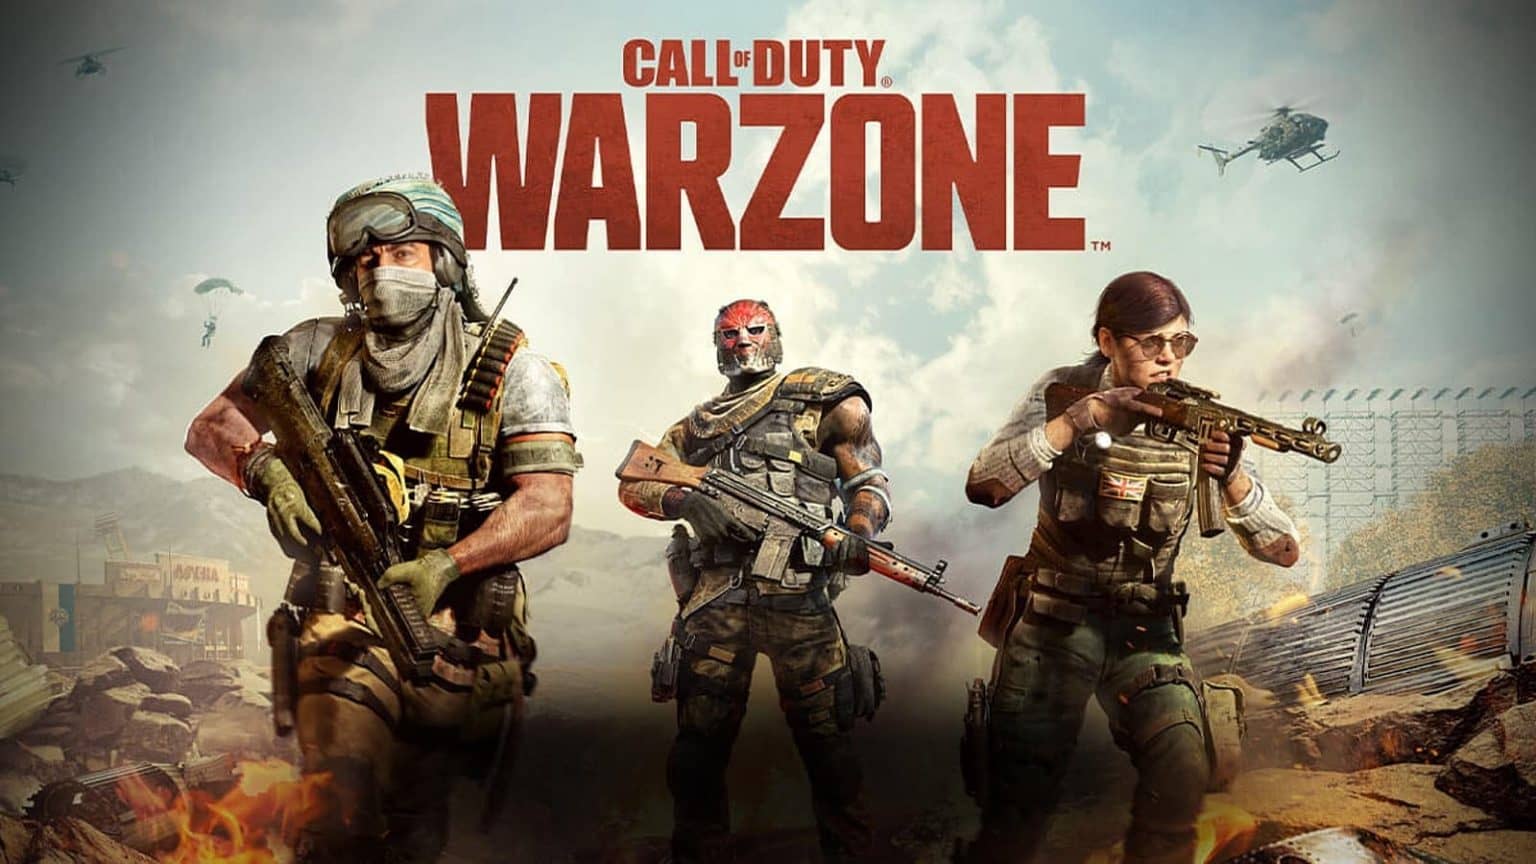 نقد بازی کالاف دیوتی وارزون 1 Warzone | ندای وظیفه